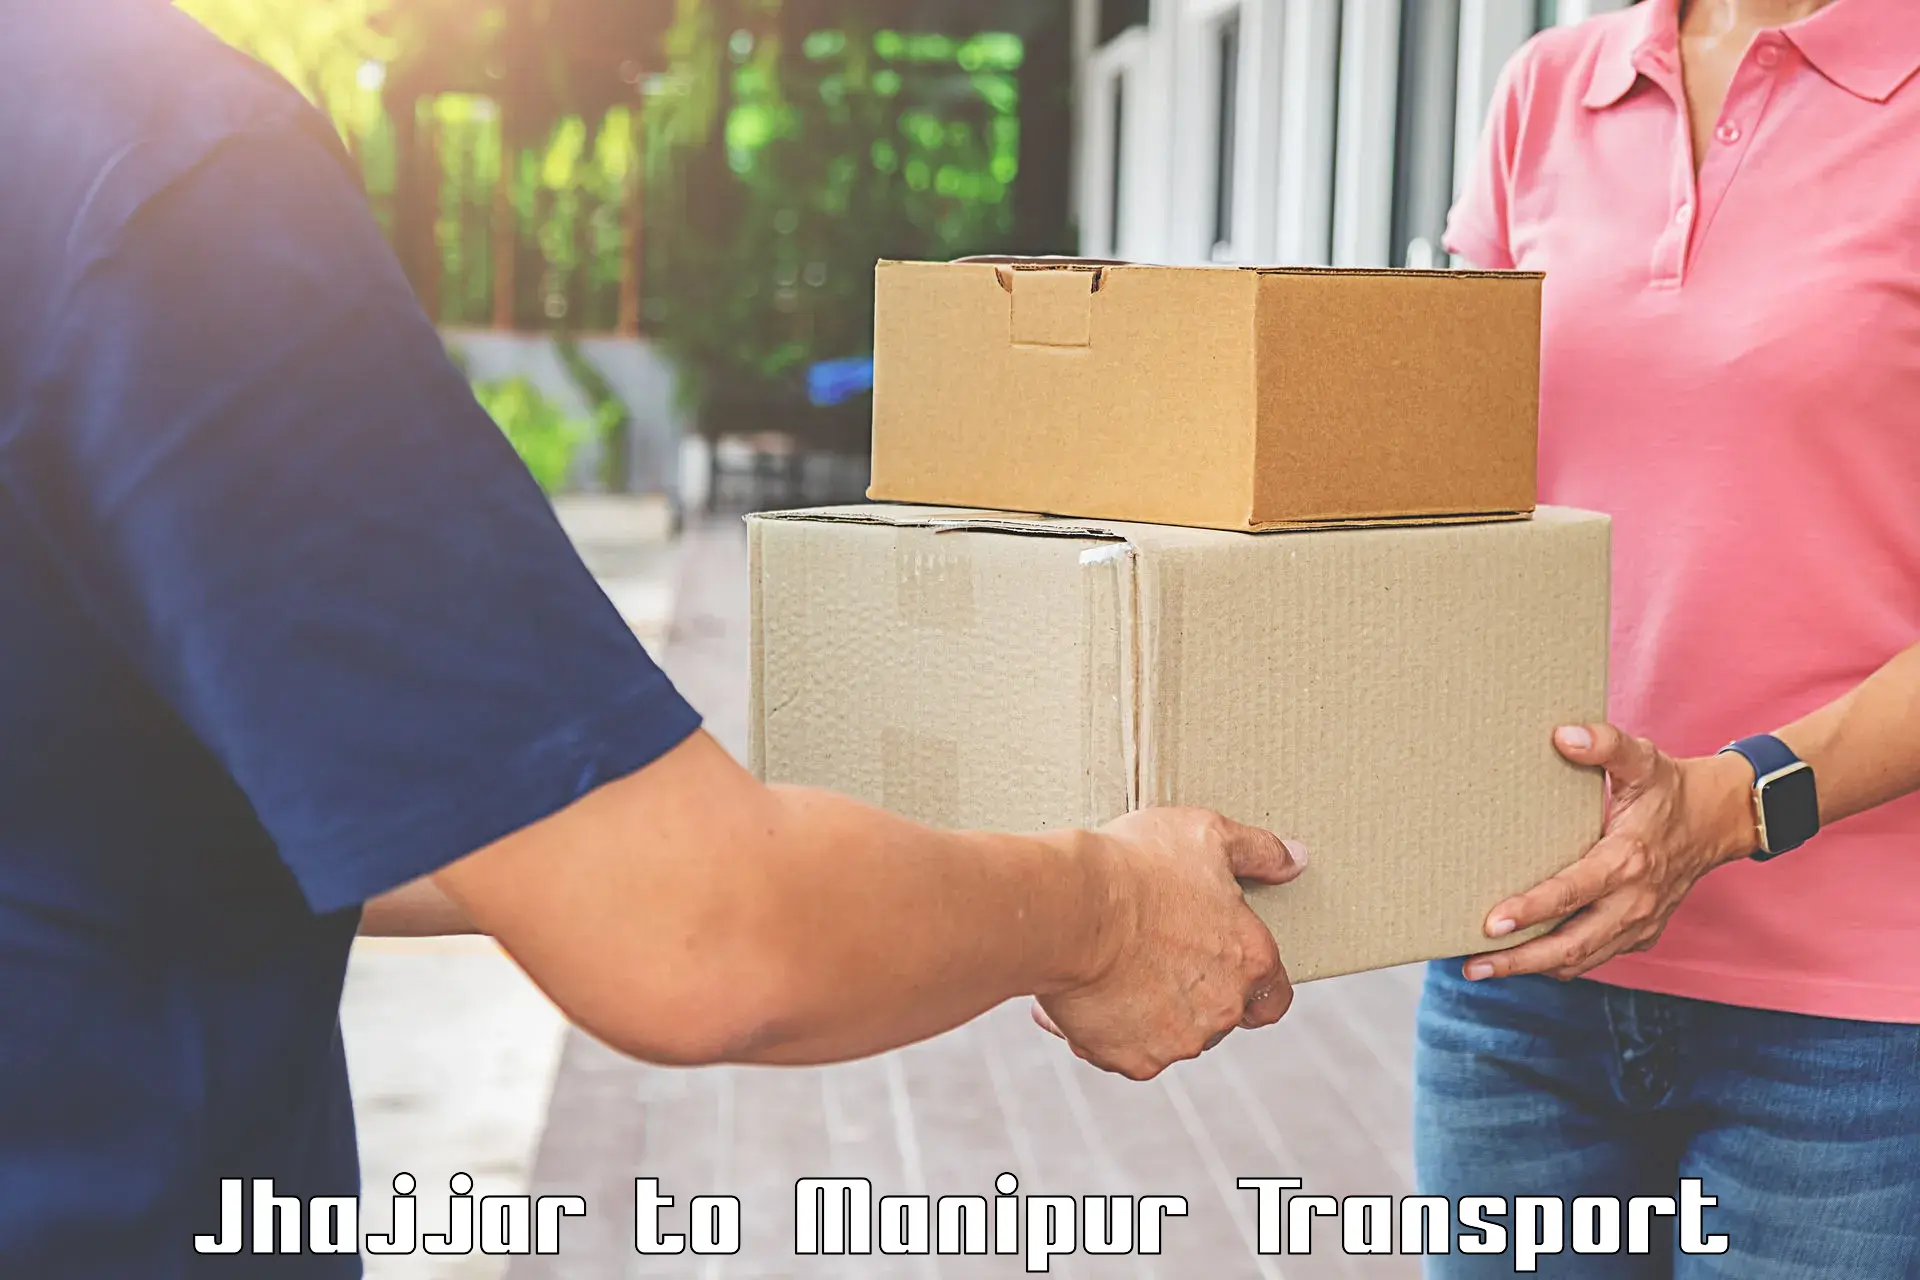 Furniture transport service Jhajjar to Moirang